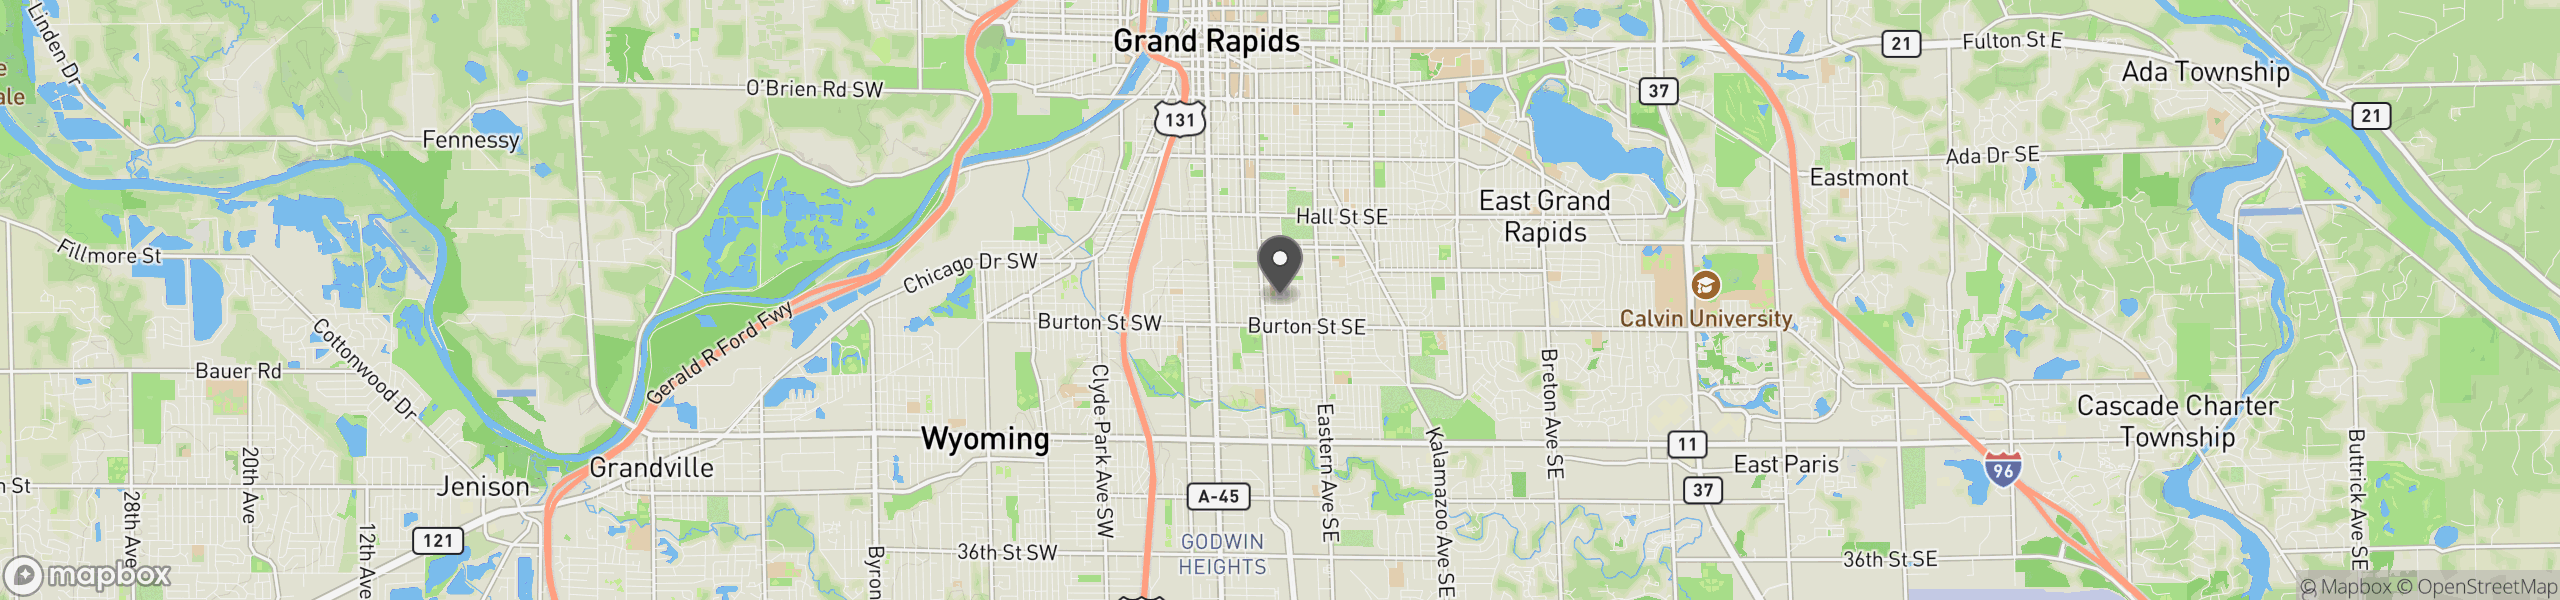 Grand Rapids, MI 49507